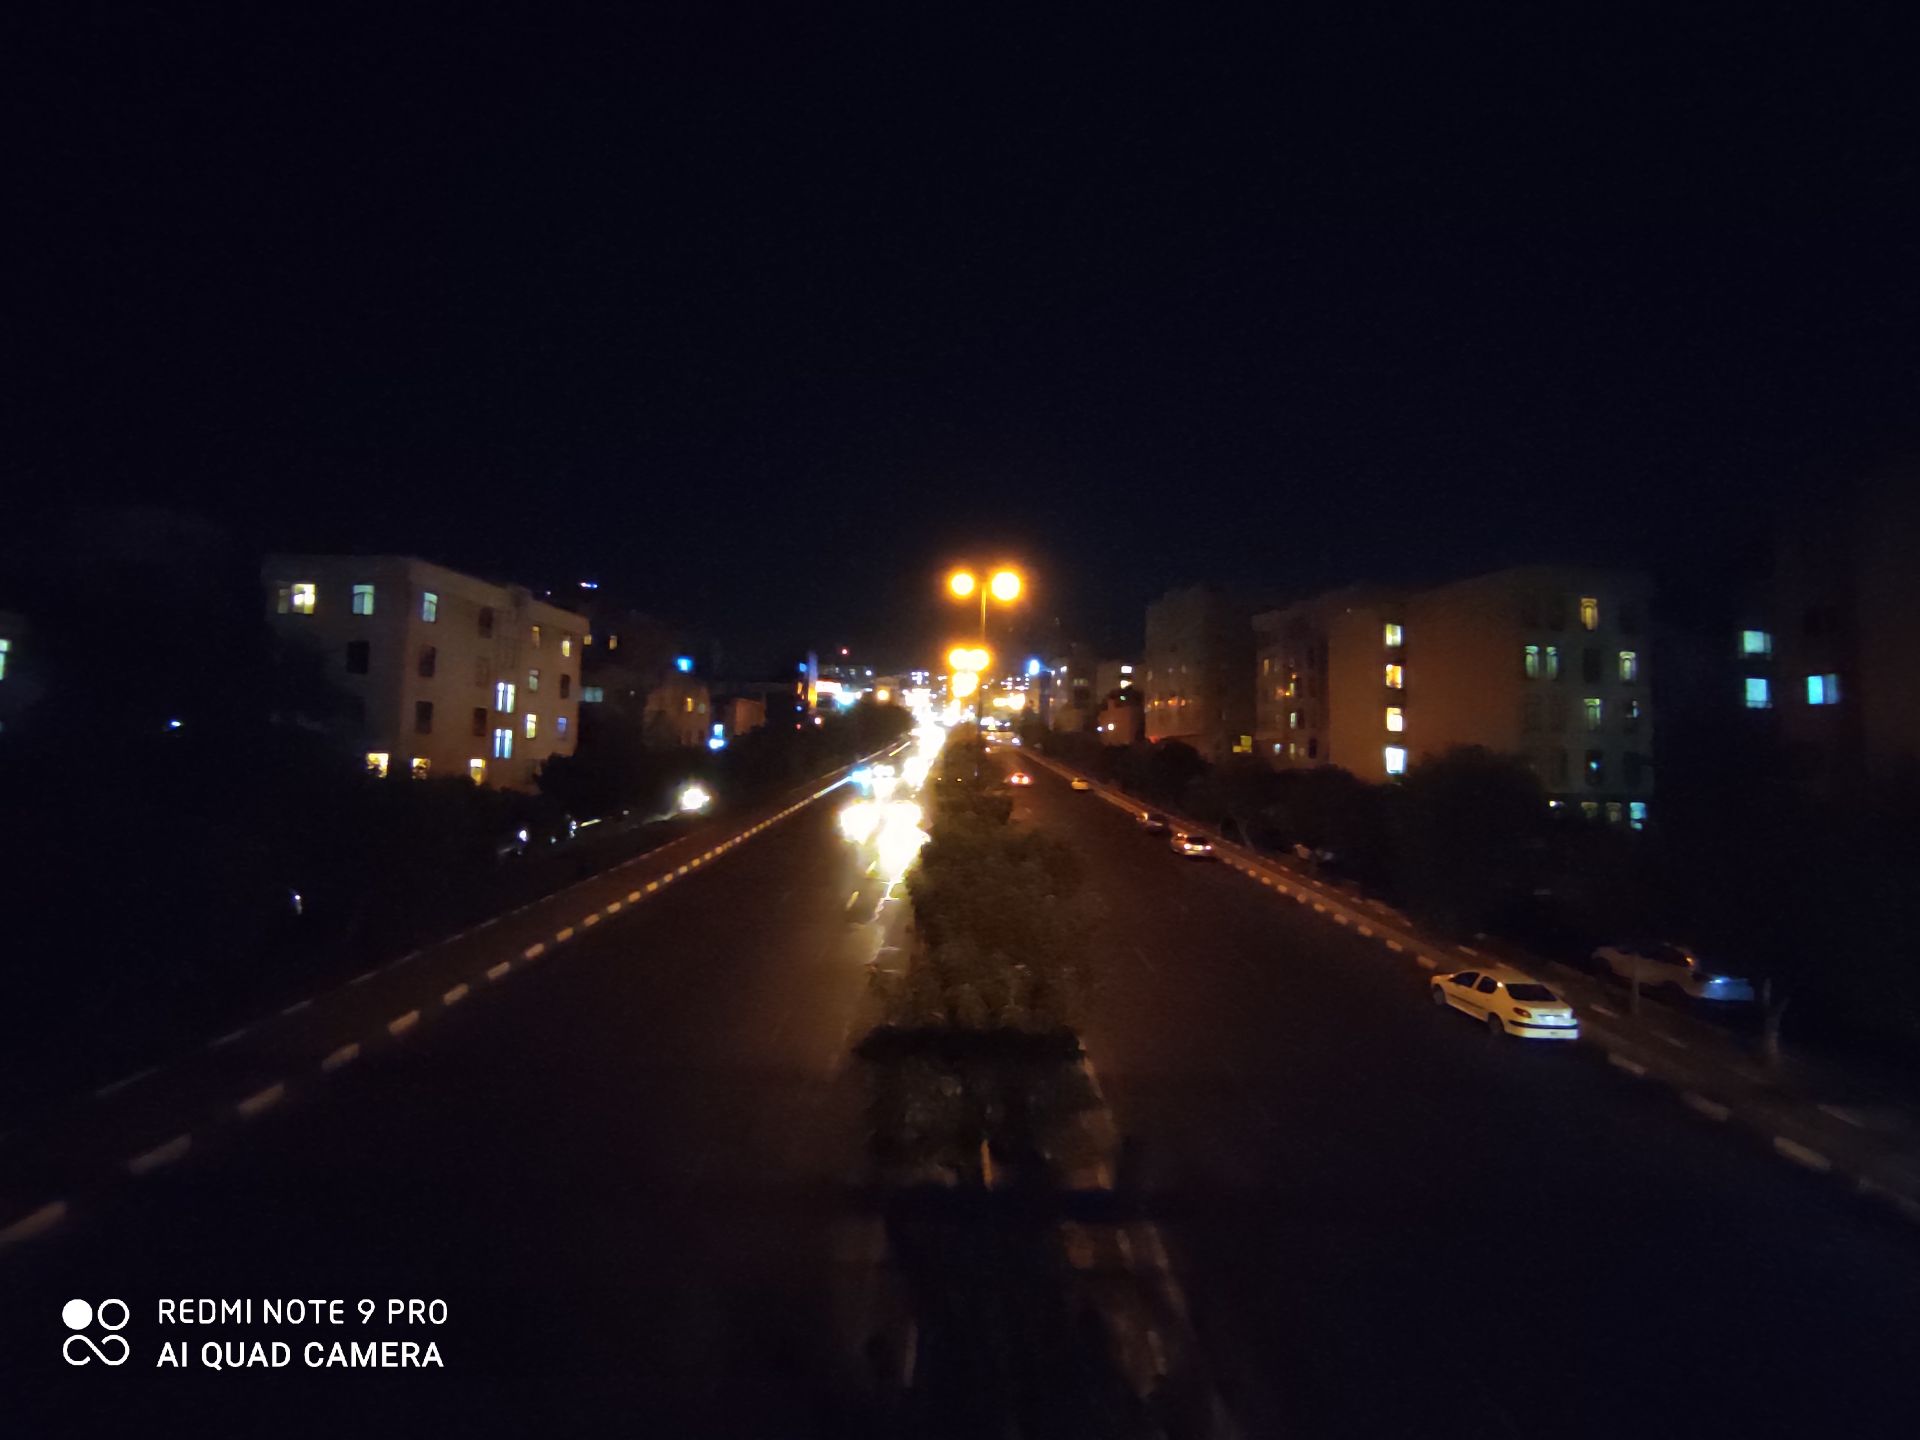 نمونه عکس ردمی نوت 9 پرو - اولتراواید - ساختمان و خیابان در تاریکی